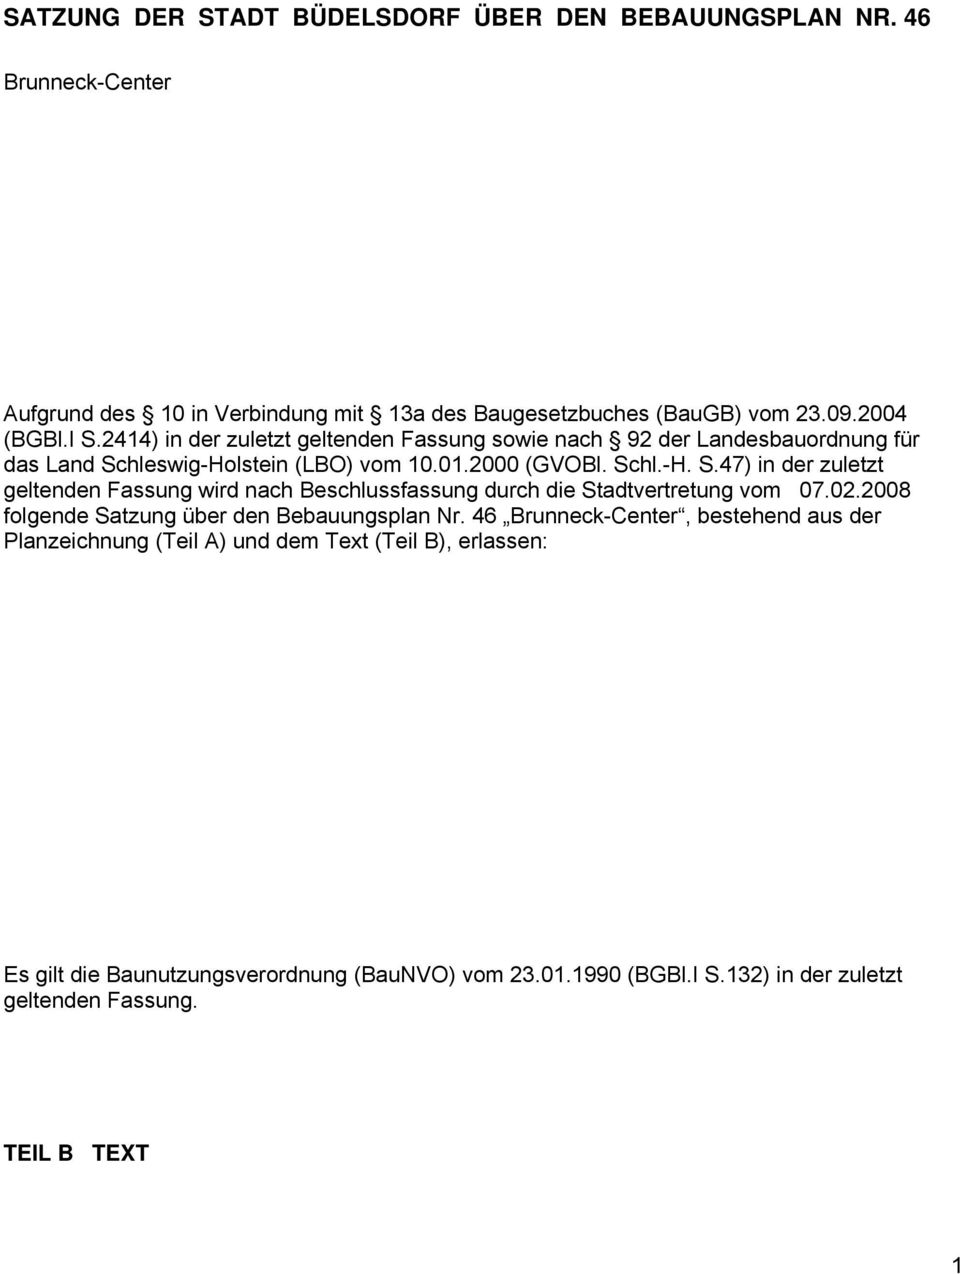 hleswig-Holstein (LBO) vom 10.01.2000 (GVOBl. Schl.-H. S.47) in der zuletzt geltenden Fassung wird nach Beschlussfassung durch die Stadtvertretung vom 07.02.